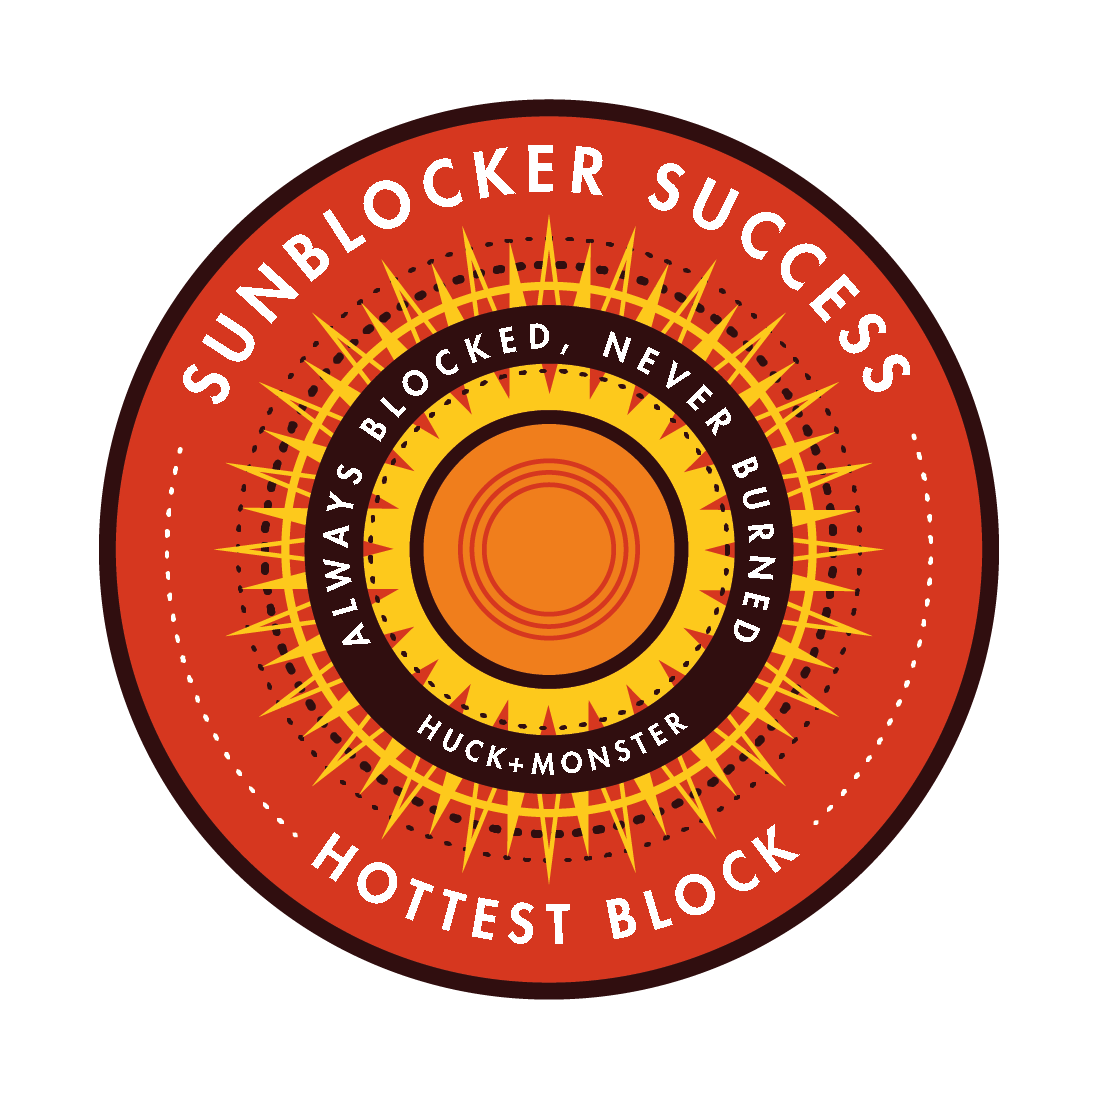 Sunblocker Success